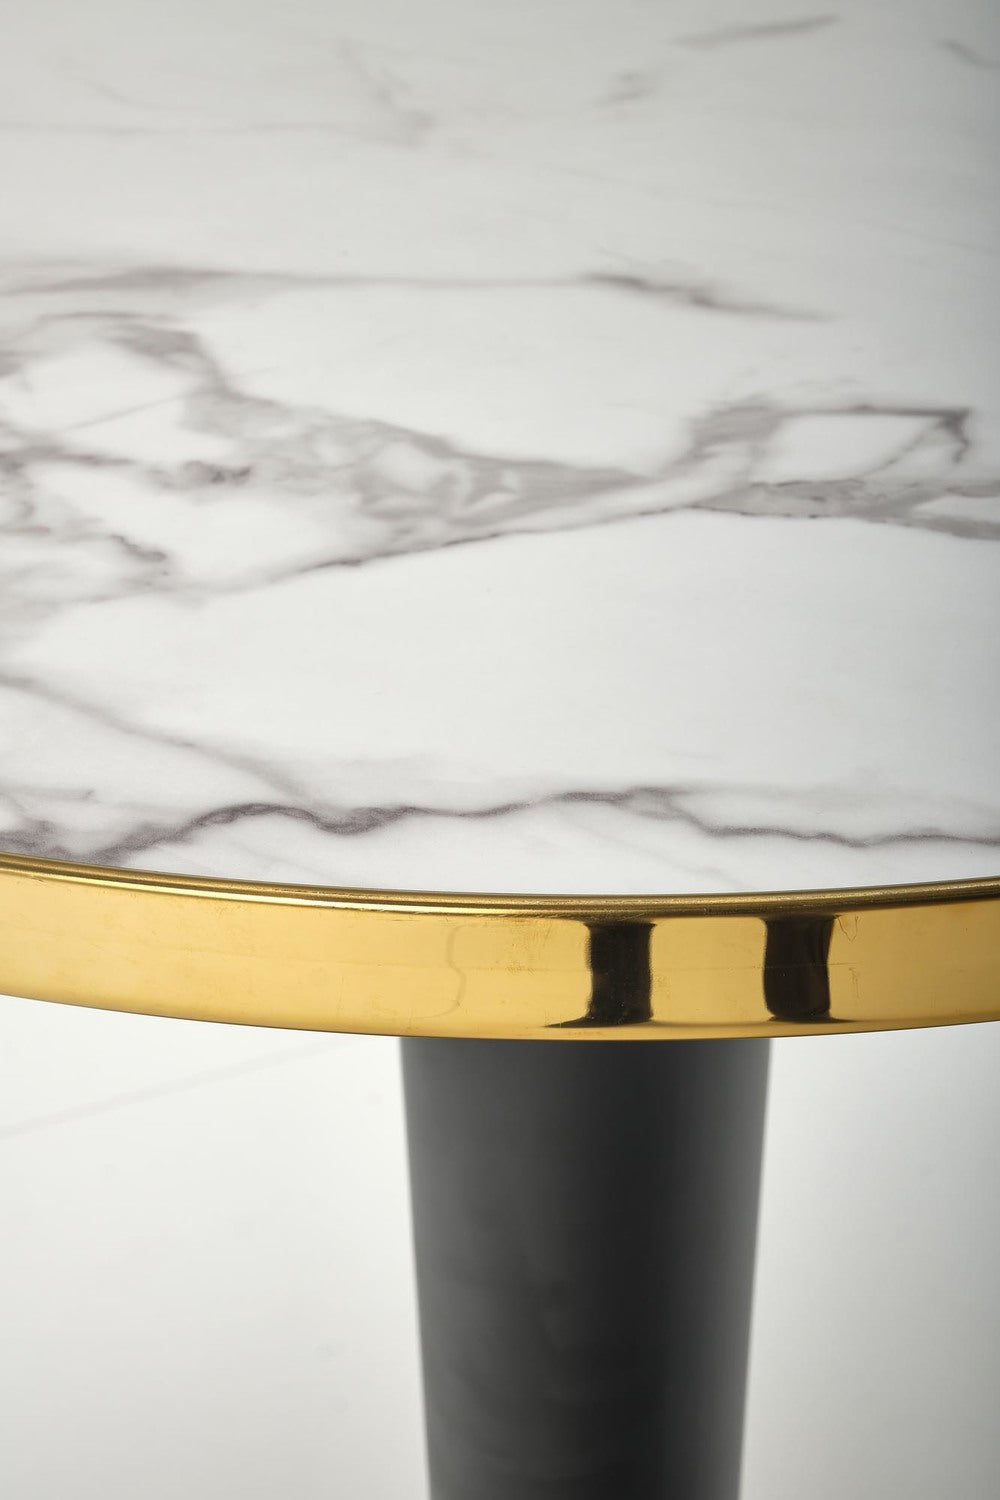 MR apaļais galds, baltais marmors / melns / zelts